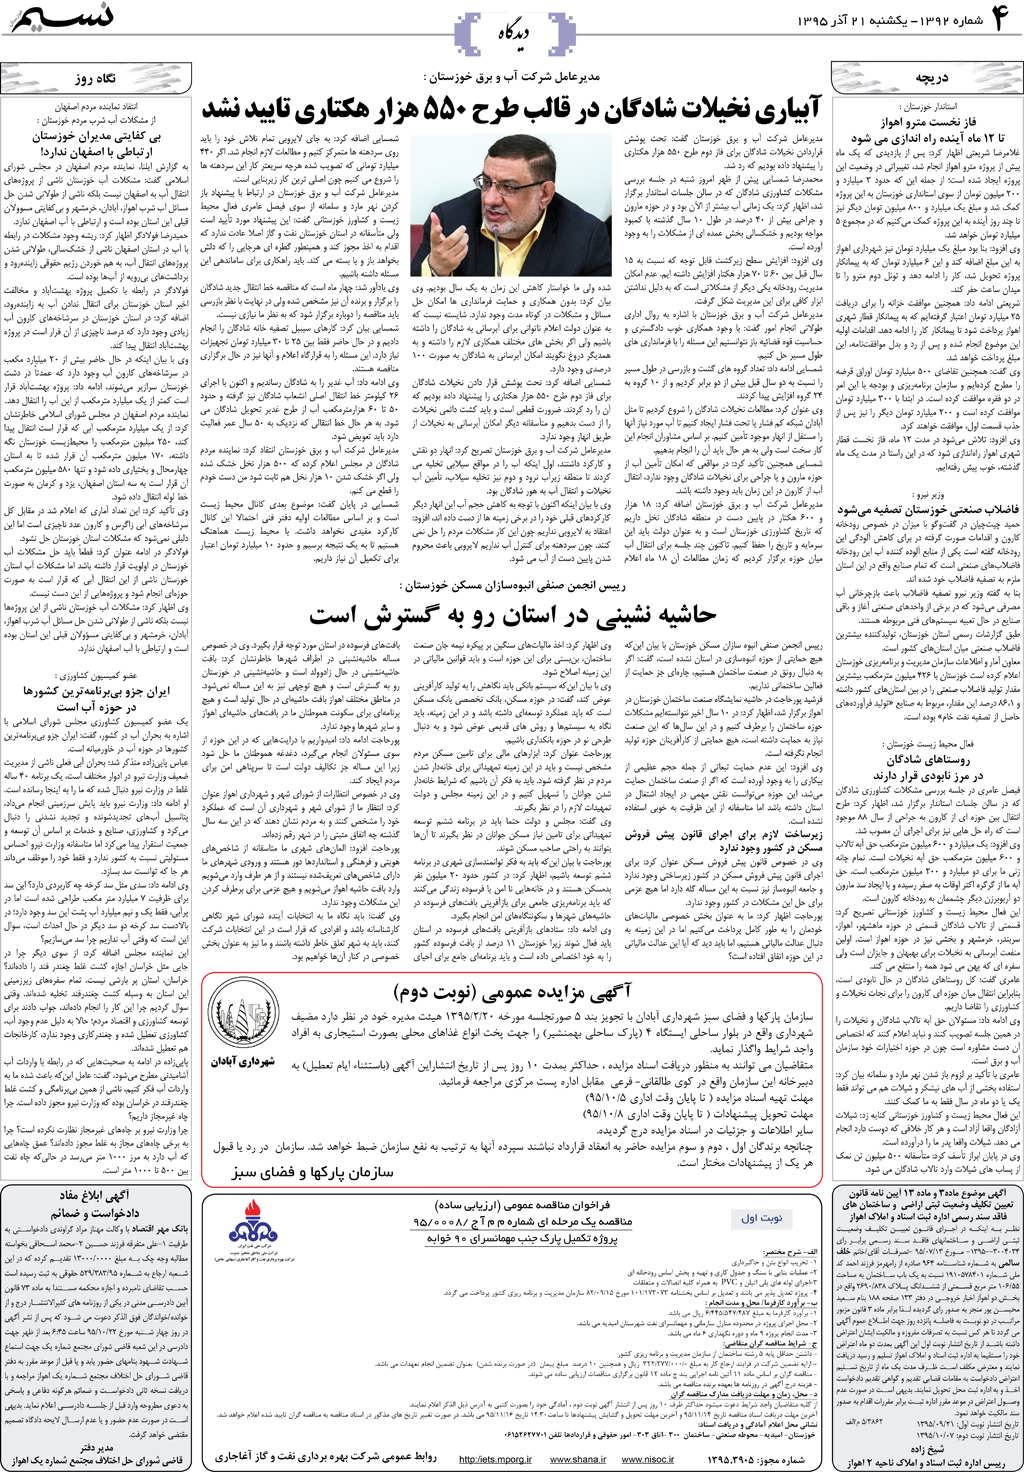 صفحه دیدگاه روزنامه نسیم شماره 1392